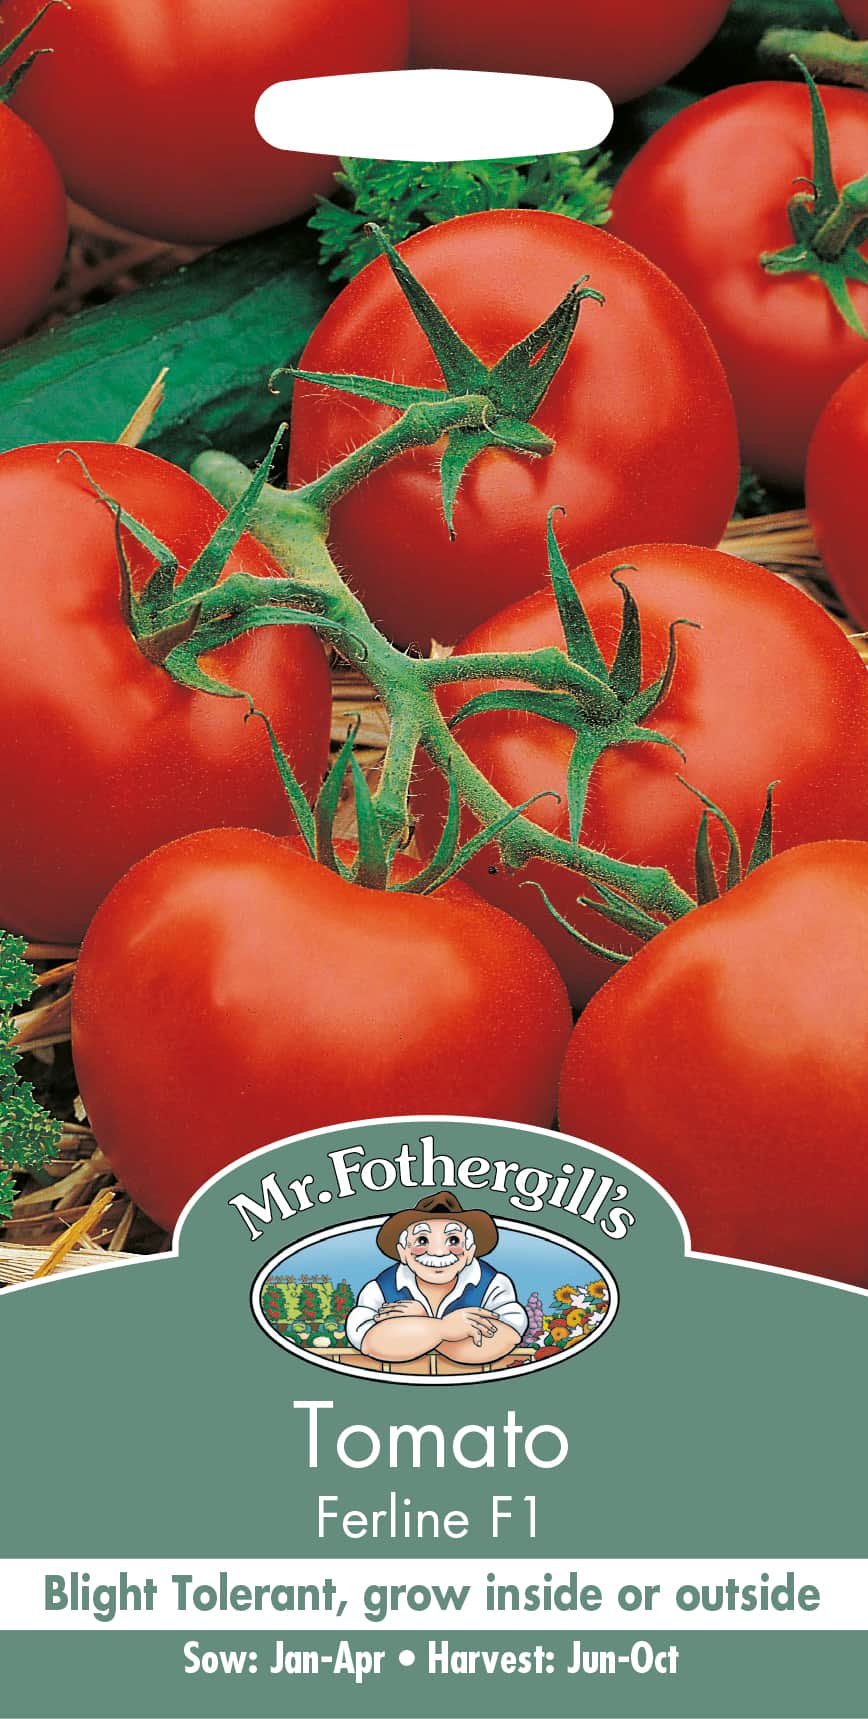 tomat-ferline-f1-1